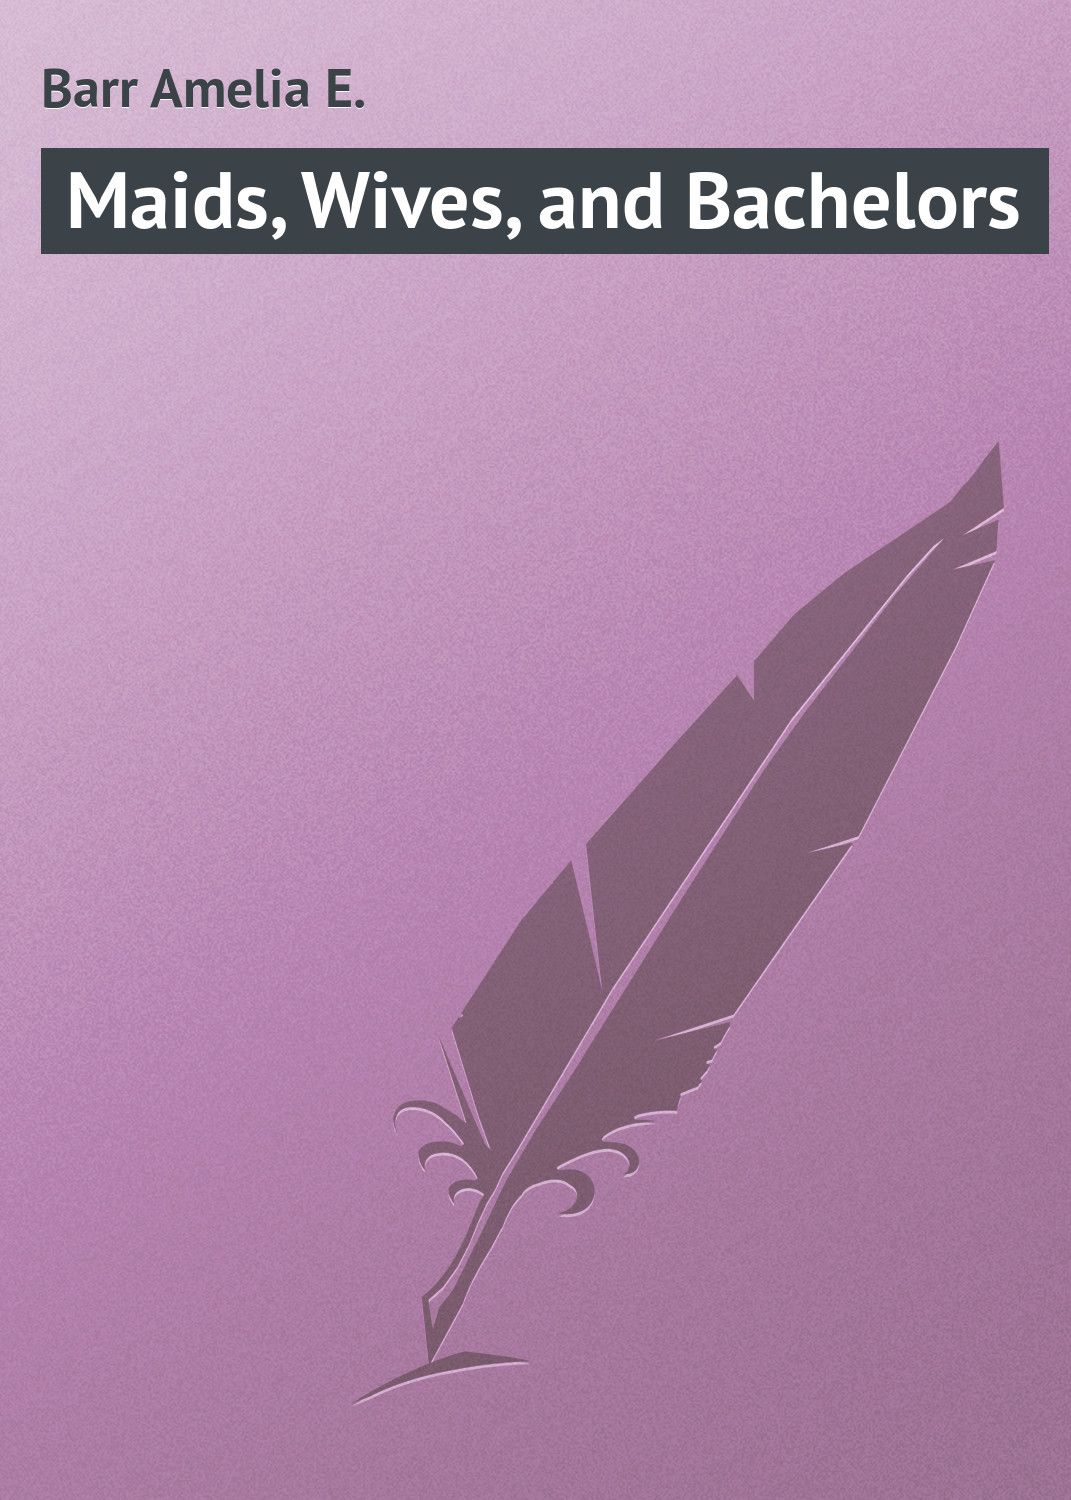 Книга Maids, Wives, and Bachelors из серии , созданная Amelia Barr, может относится к жанру Зарубежная классика. Стоимость электронной книги Maids, Wives, and Bachelors с идентификатором 23155275 составляет 5.99 руб.